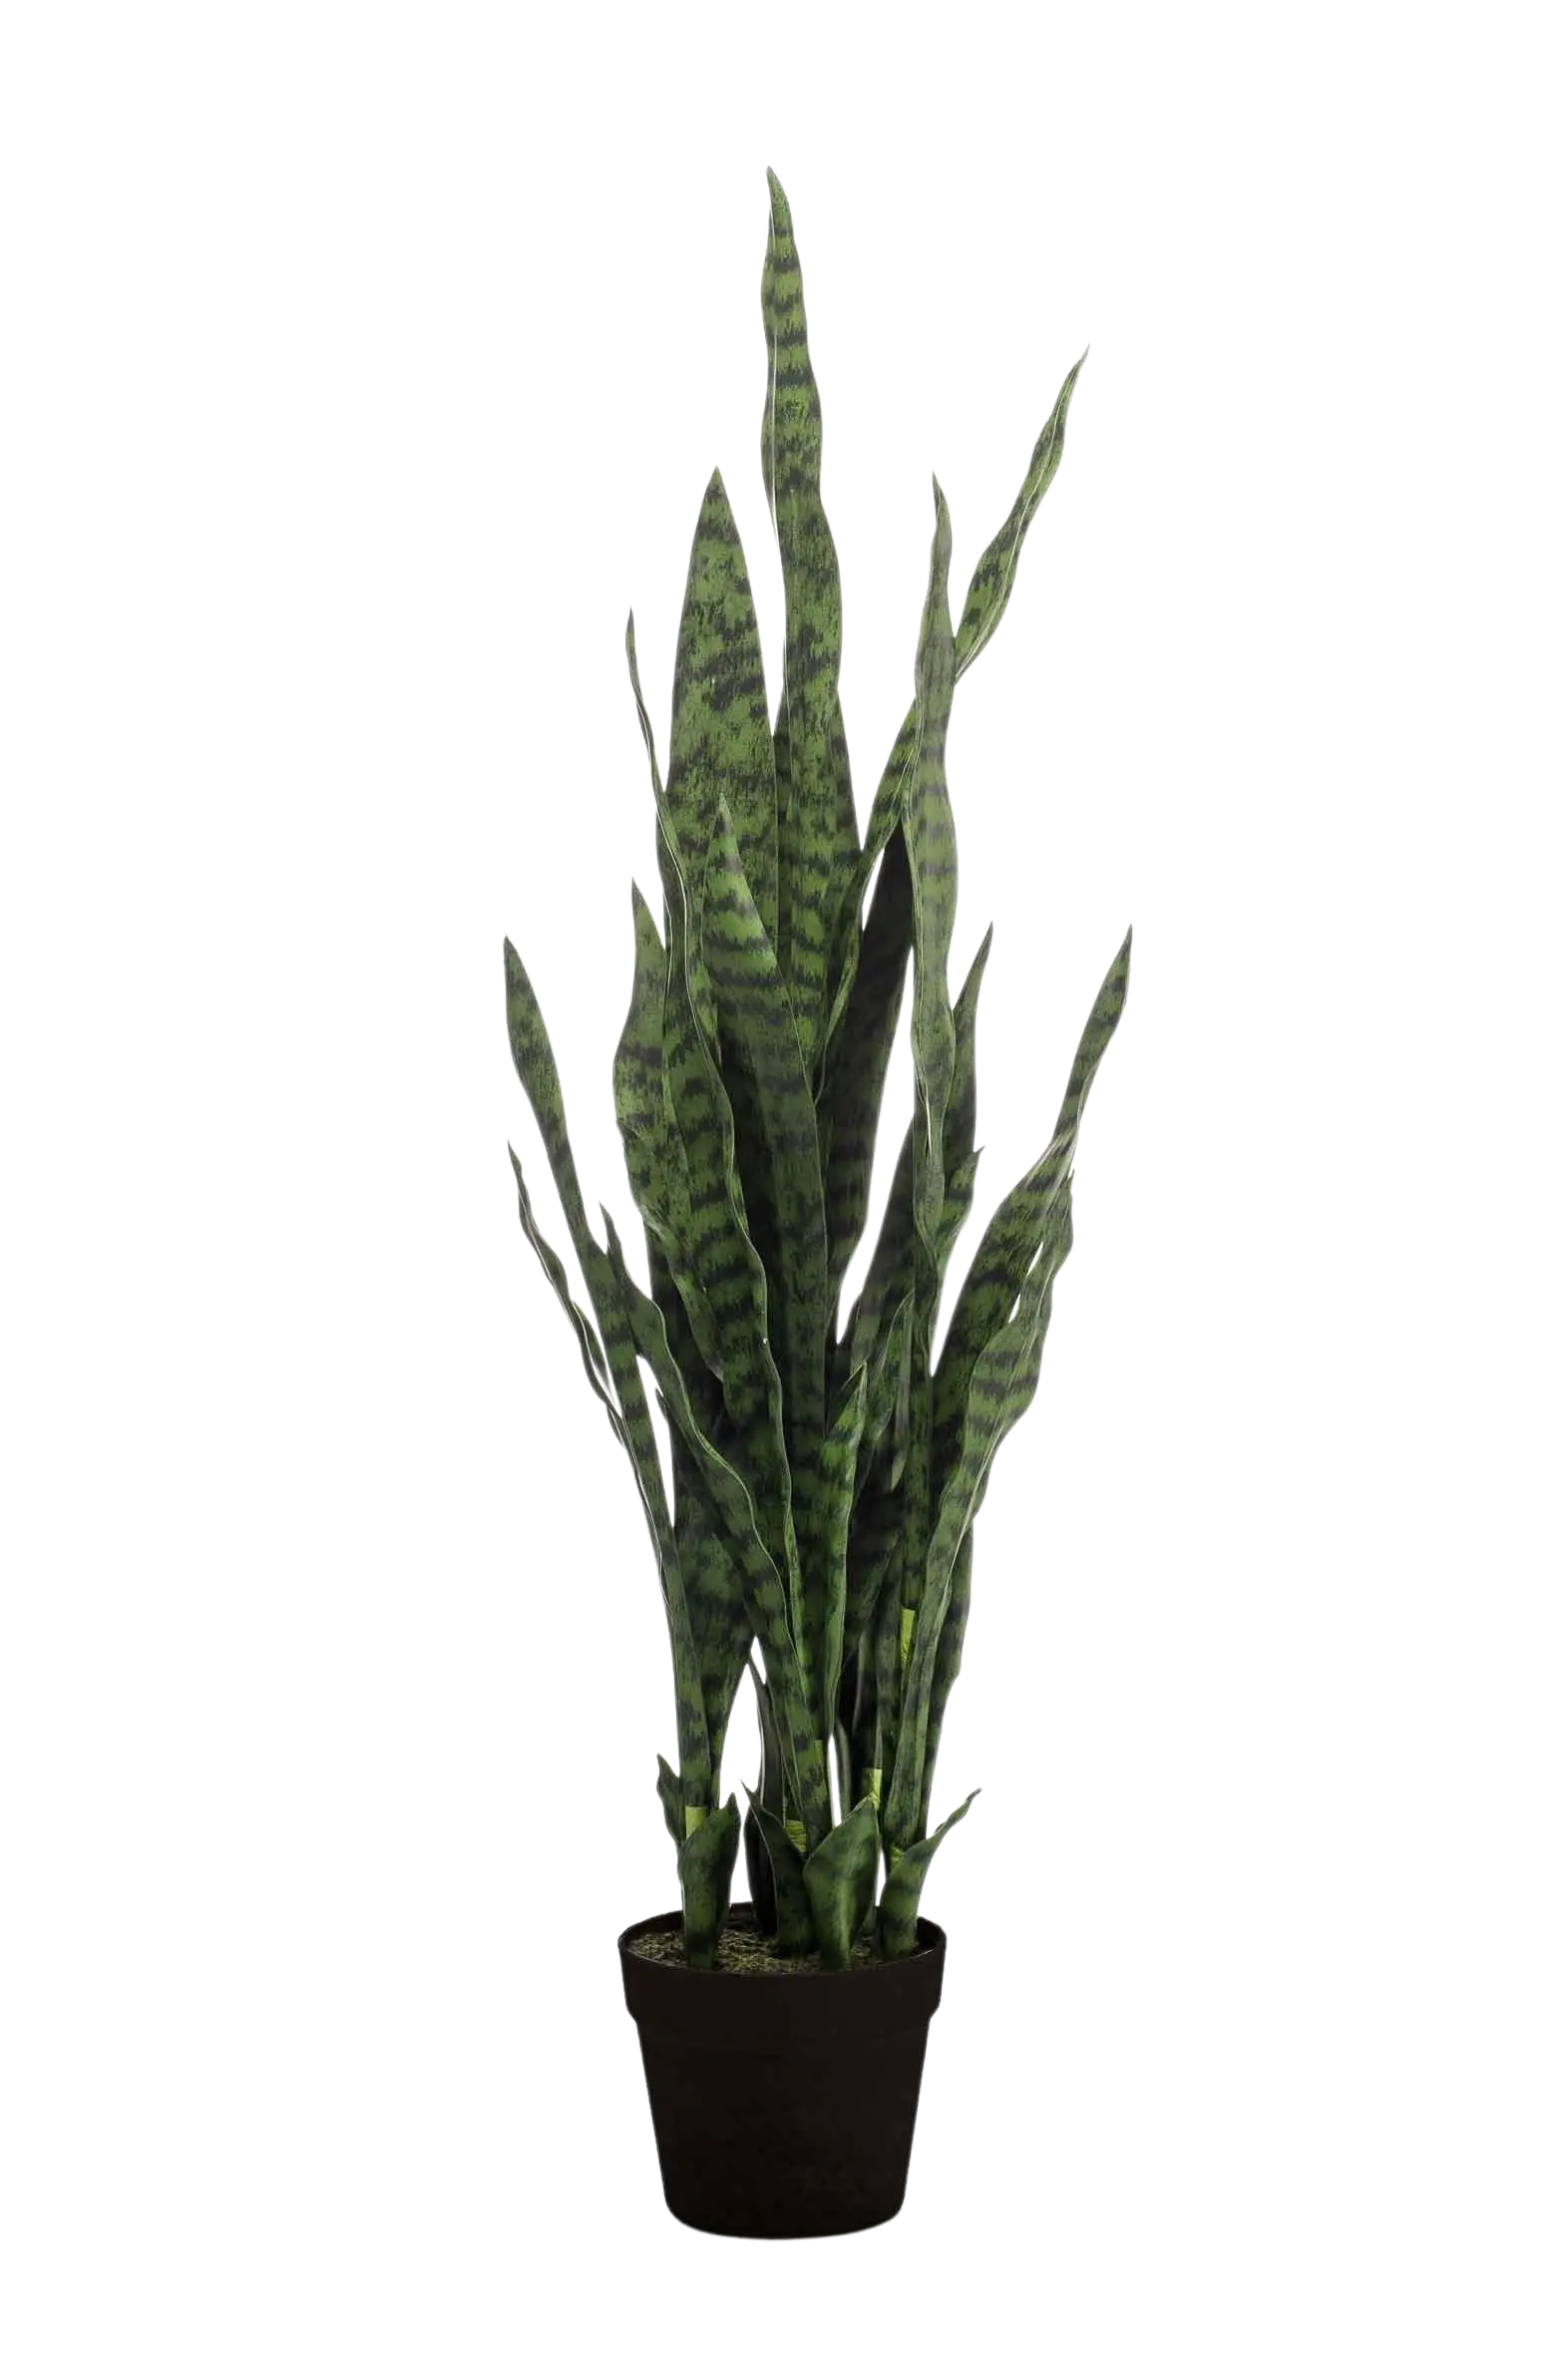 Künstlicher Bogenhanf - Jette auf transparentem Hintergrund mit echt wirkenden Kunstblättern. Diese Kunstpflanze gehört zur Gattung/Familie der "Sansevierias" bzw. "Kunst-Sansevierias".